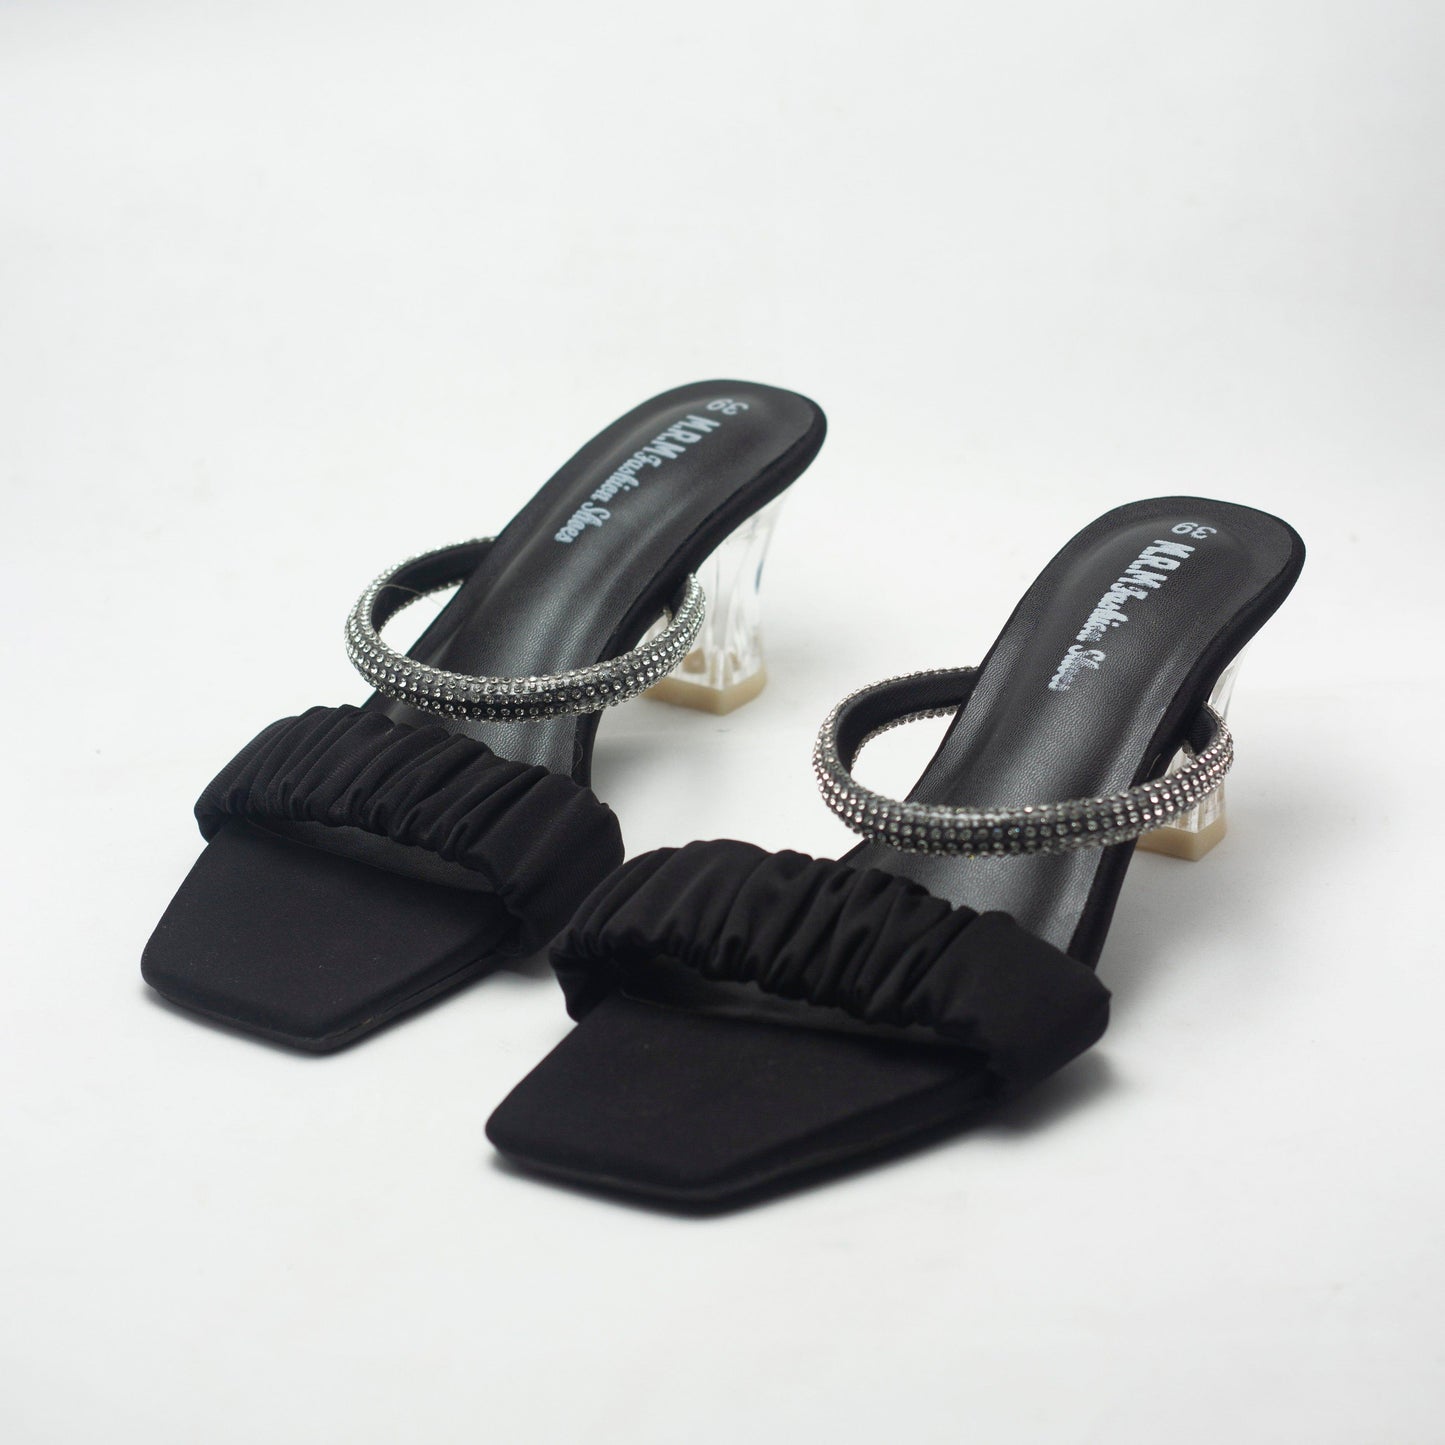 Nawabi Shoes BD 35 / black Pencil Heels Premium Shoes